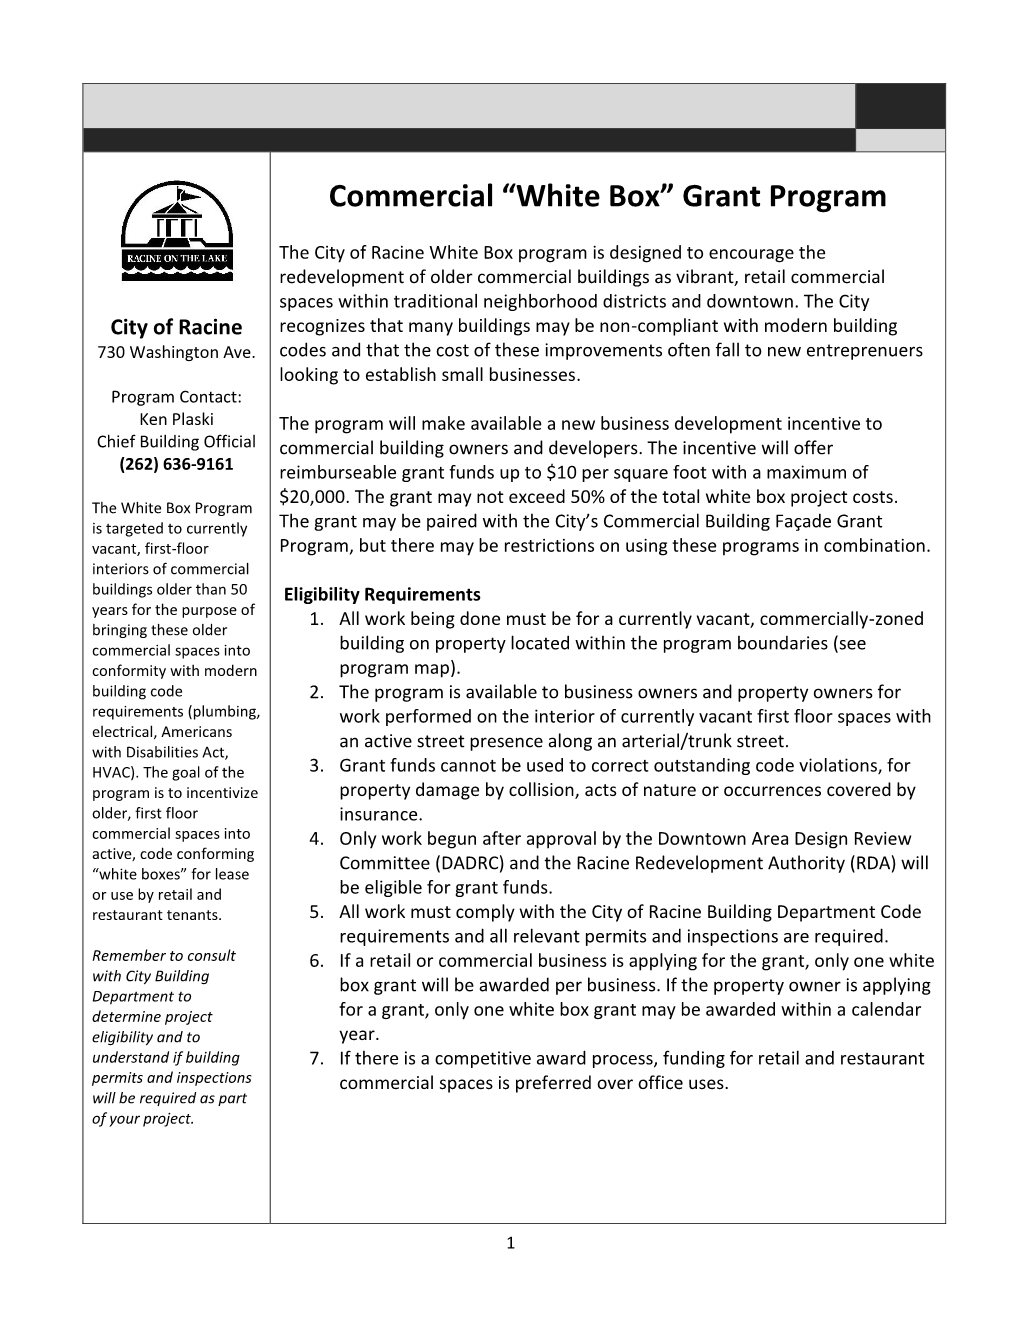 White Box” Grant Program